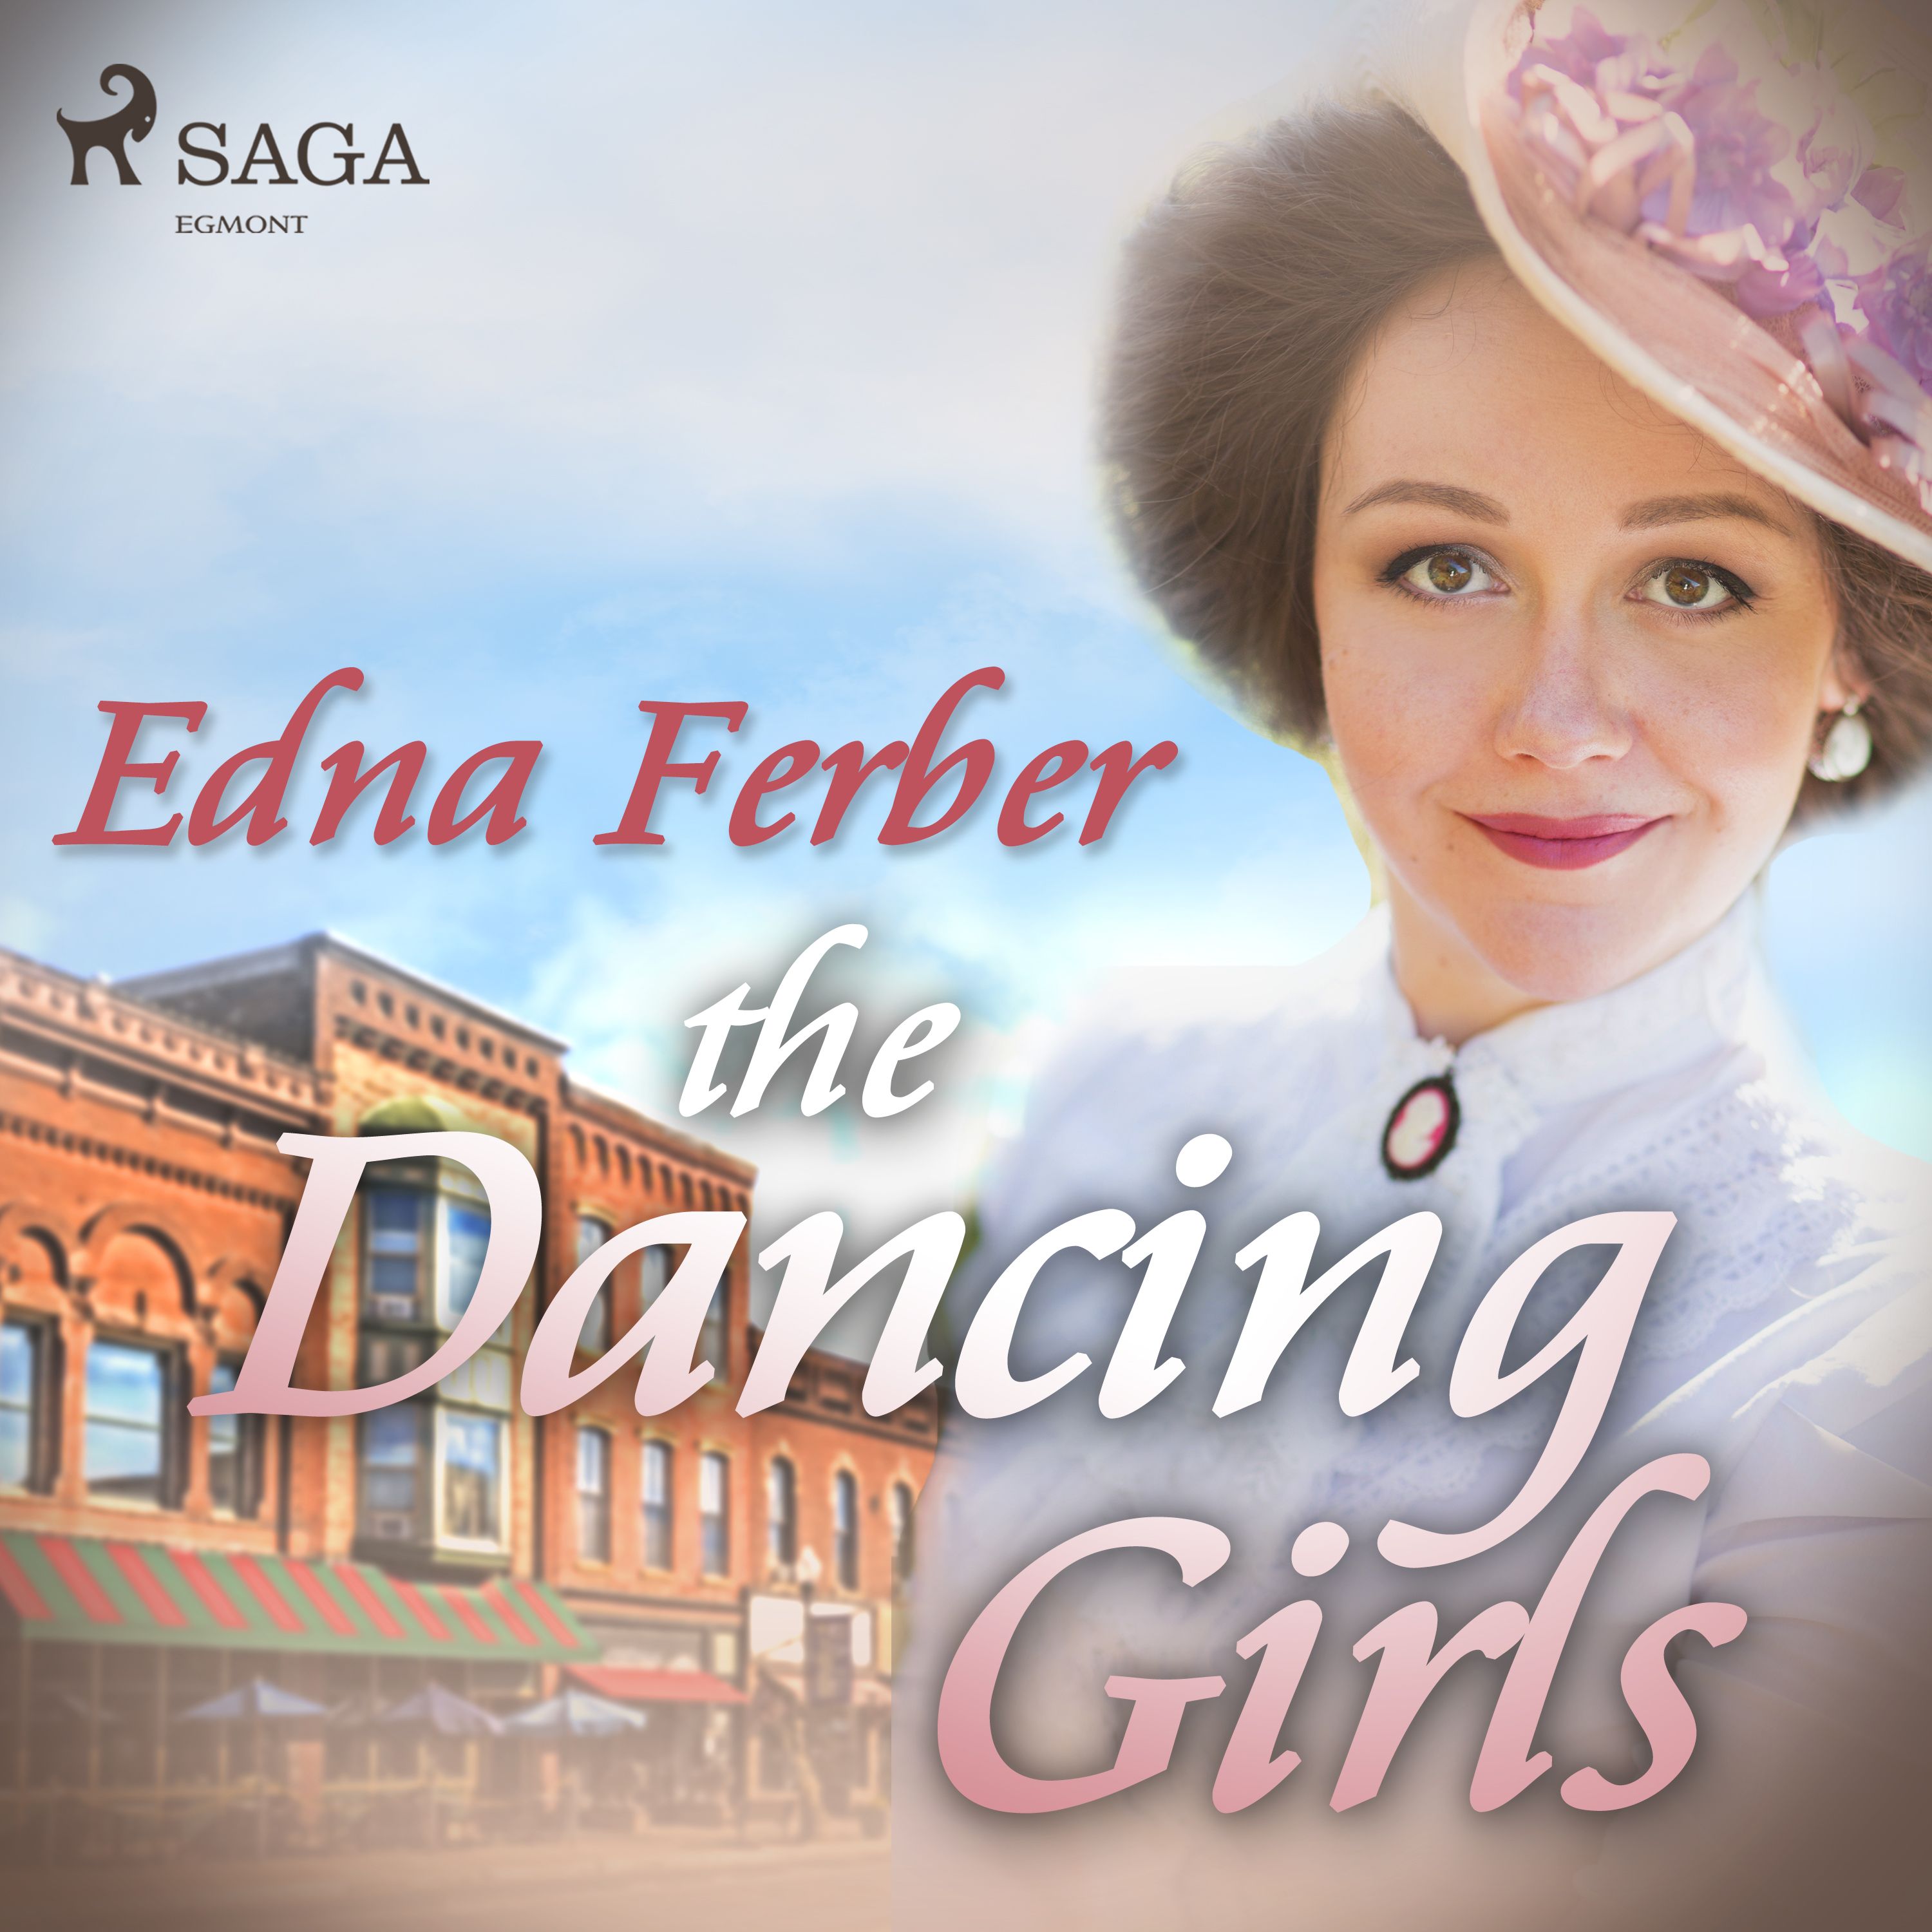 The Dancing Girls, ljudbok av Edna Ferber